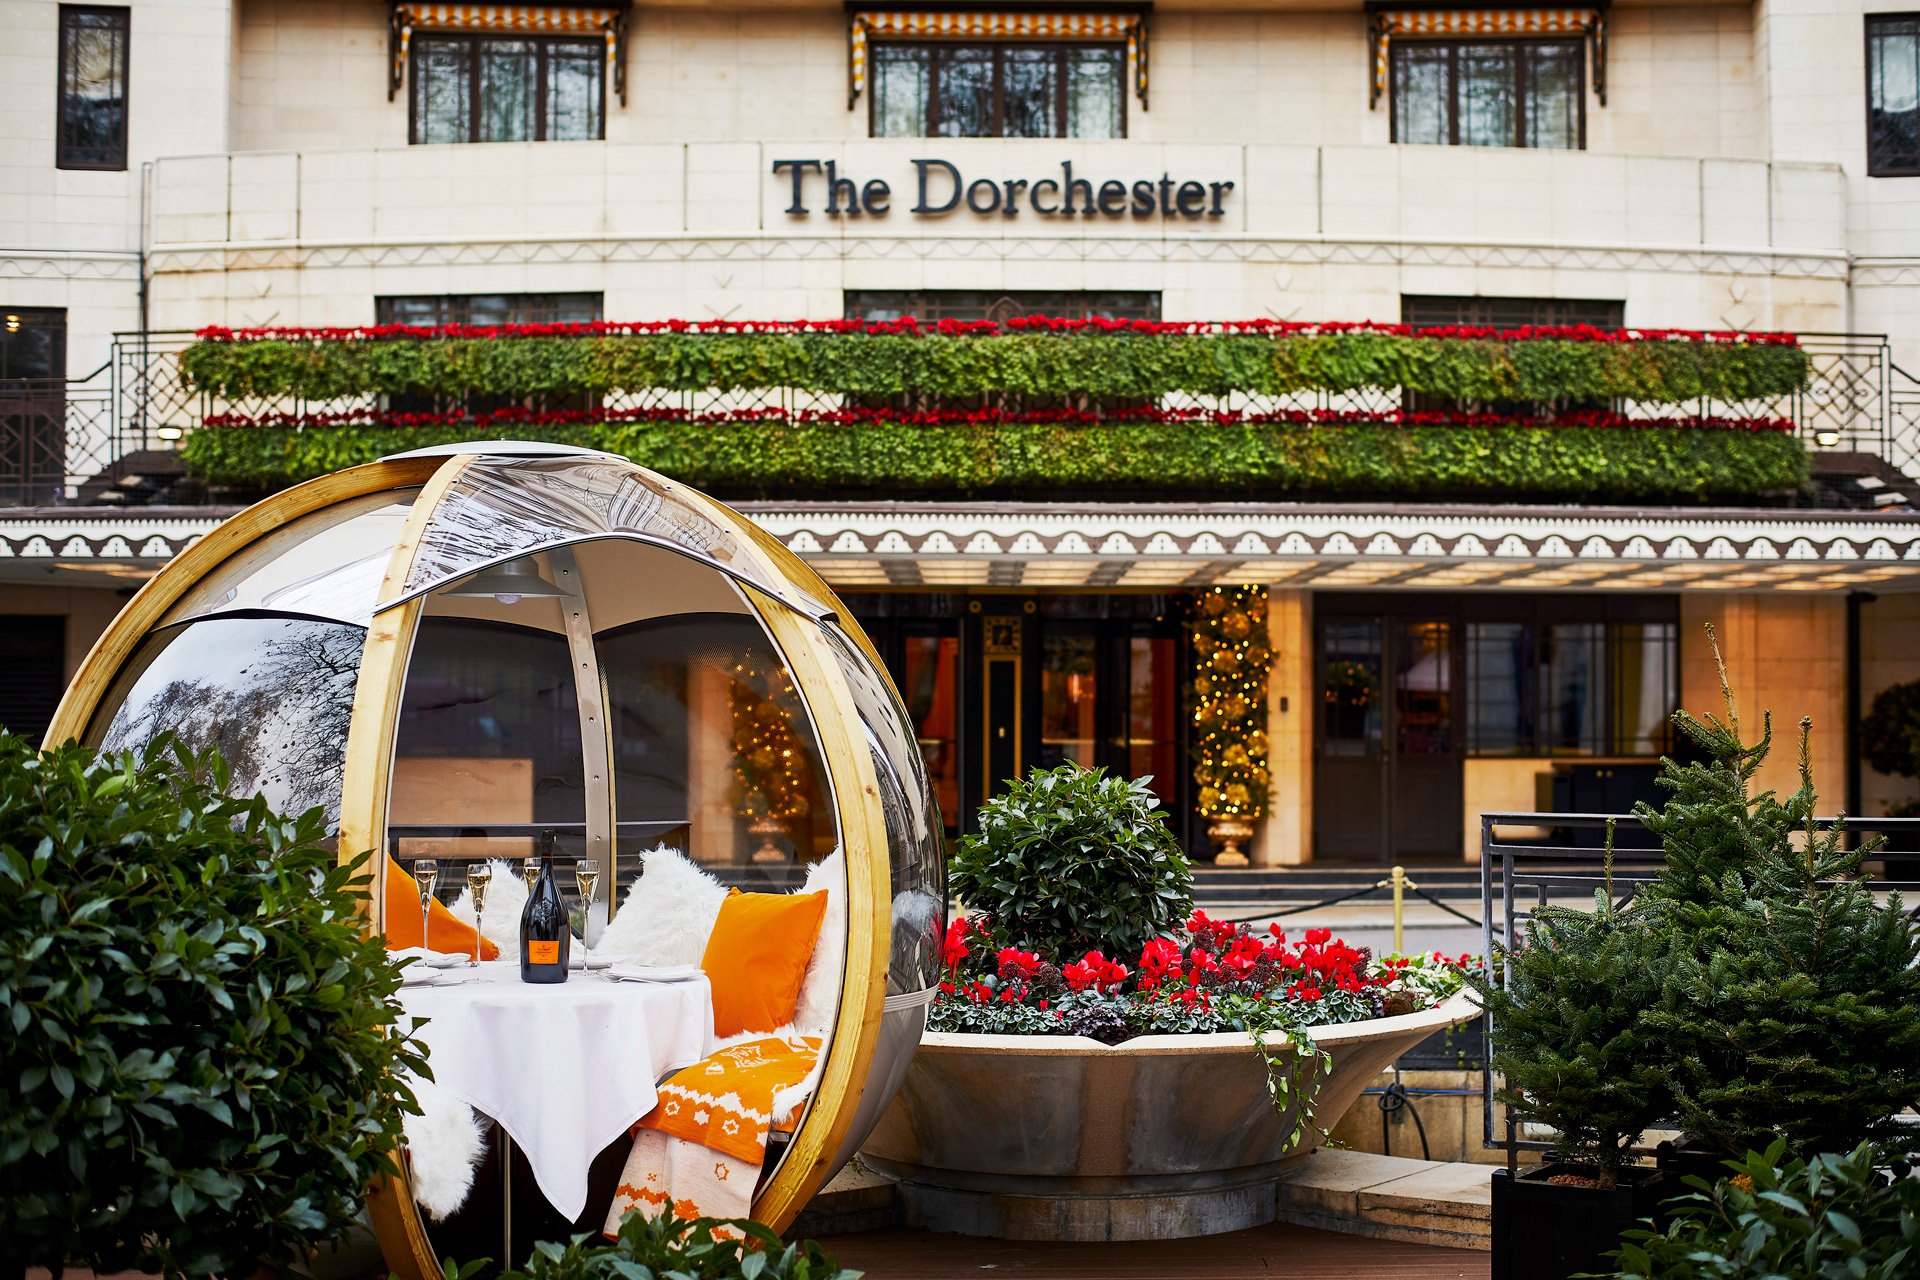  The Dorchester